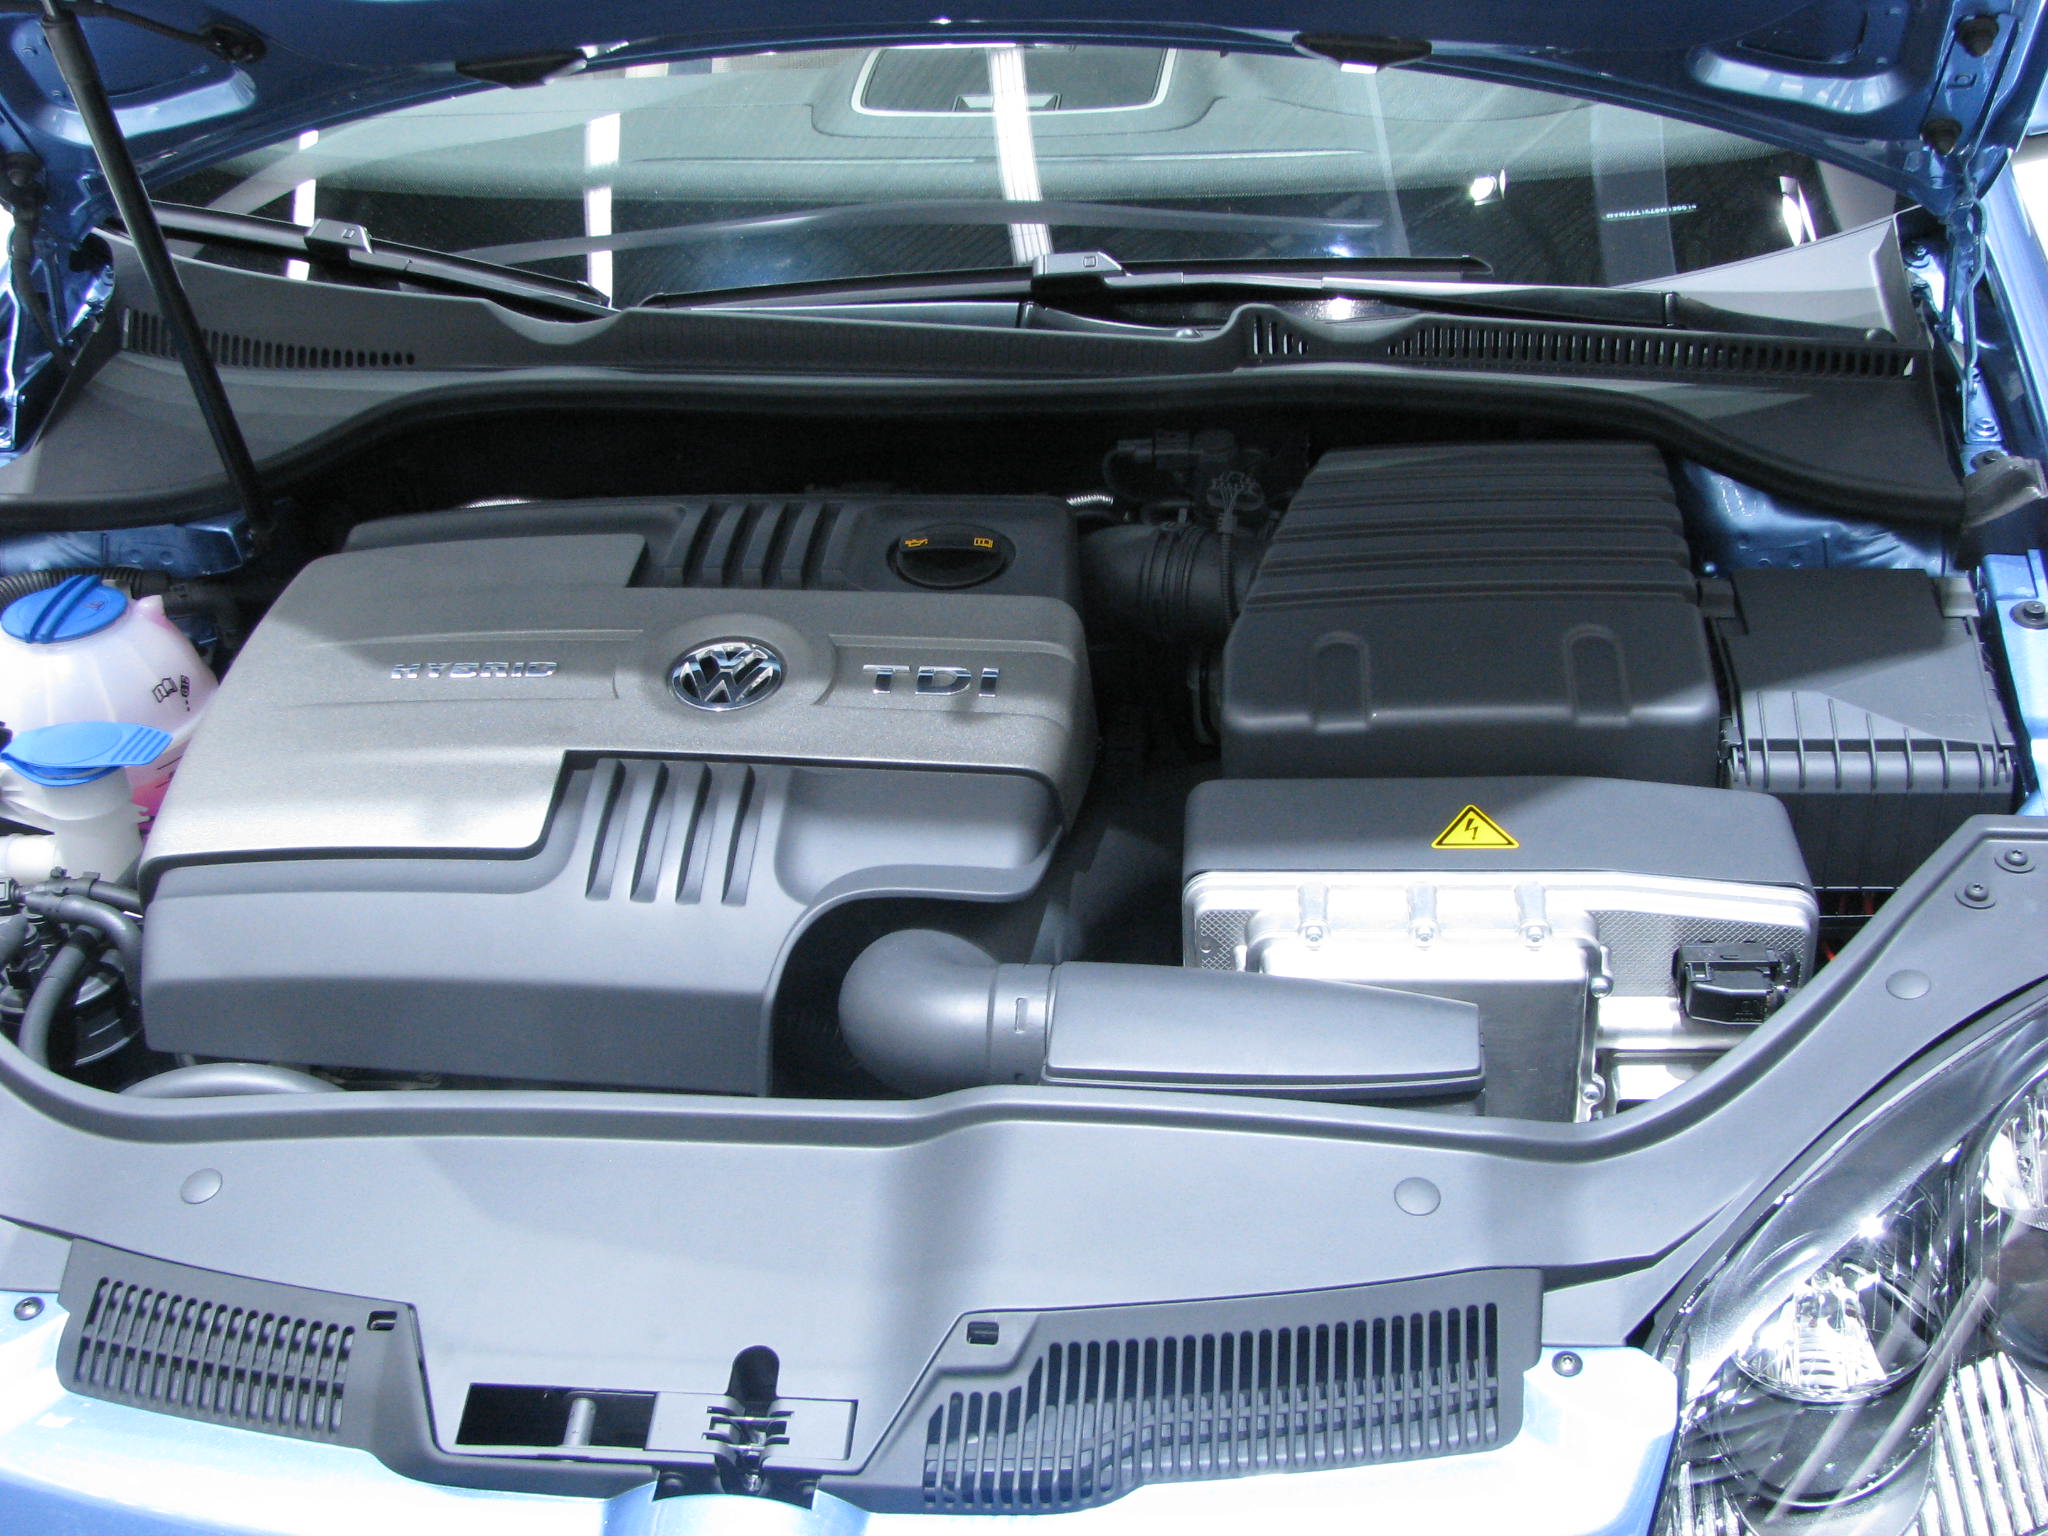 VW Dieselhybrid